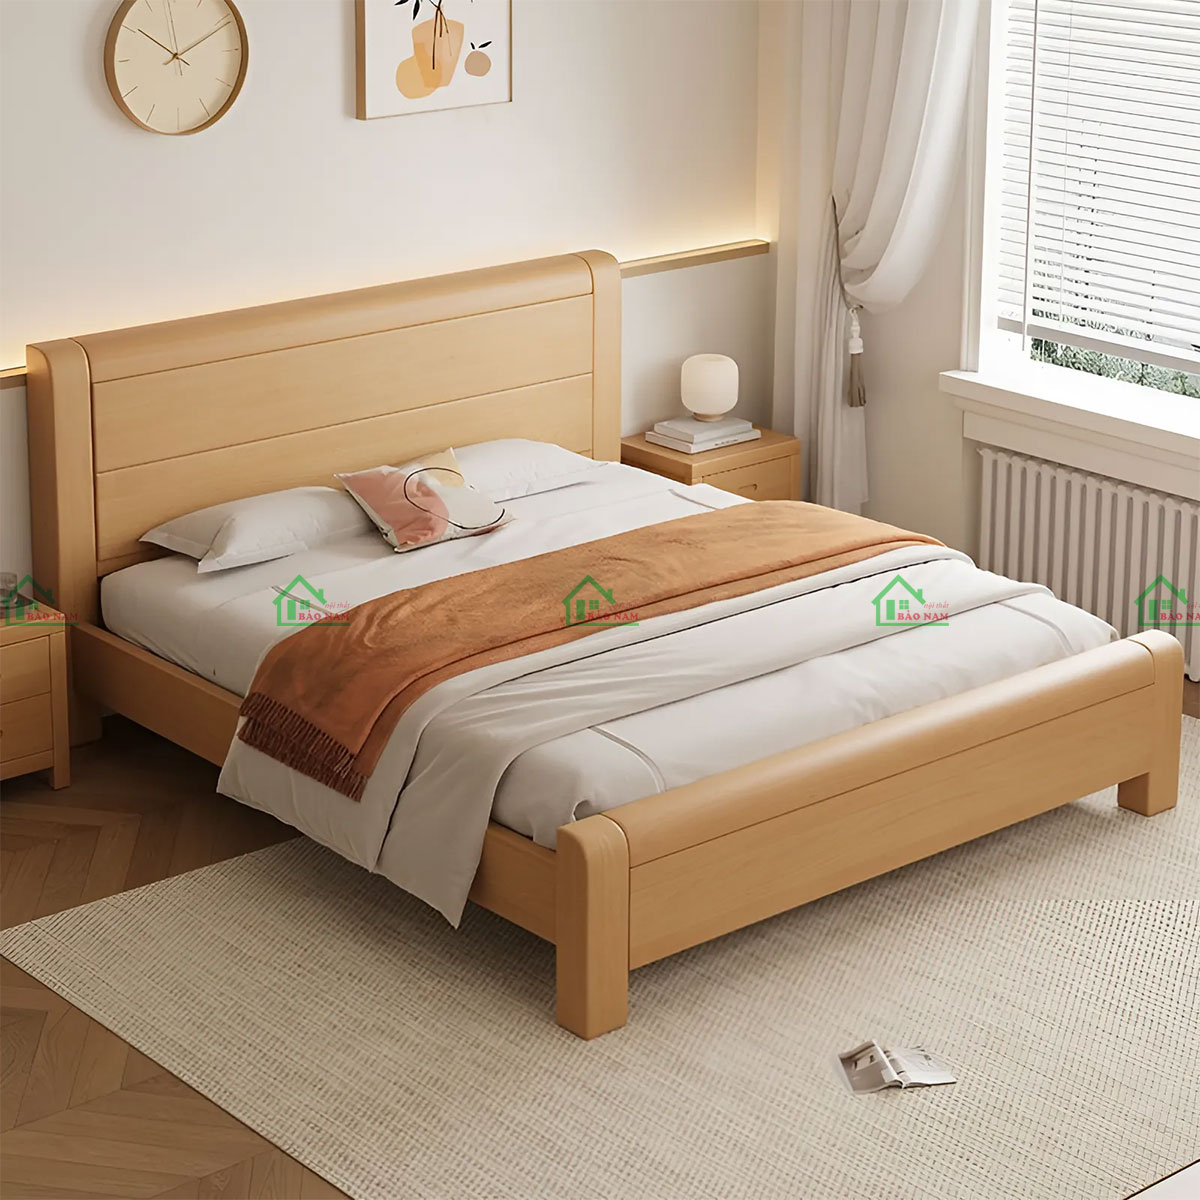 Mẫu giường ngủ gỗ tự nhiên bền, đẹp